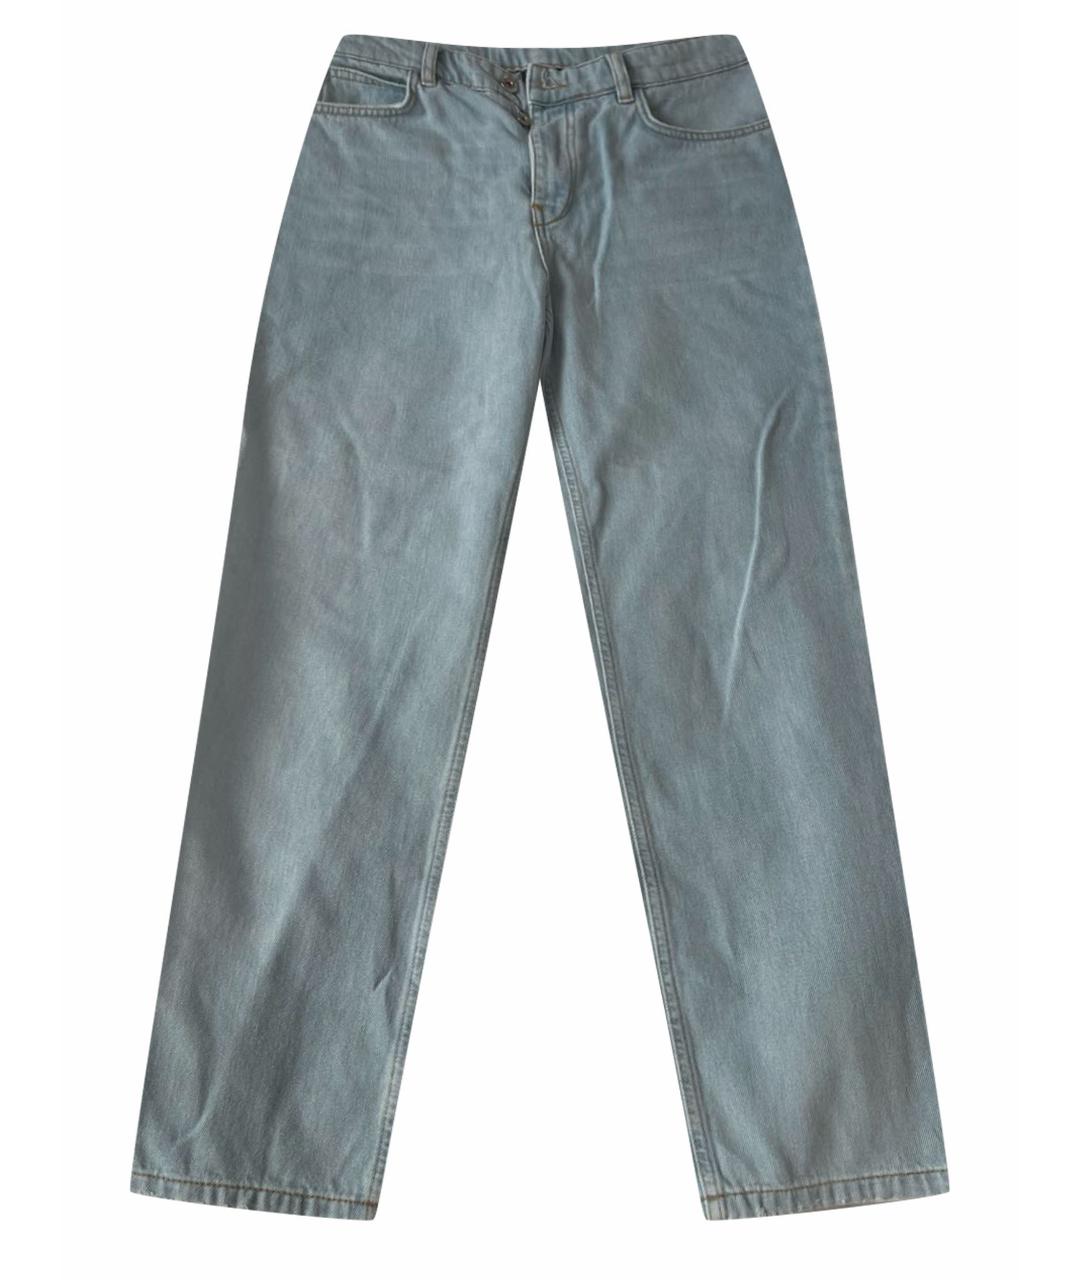 TWIN-SET Голубые хлопковые прямые джинсы, фото 1